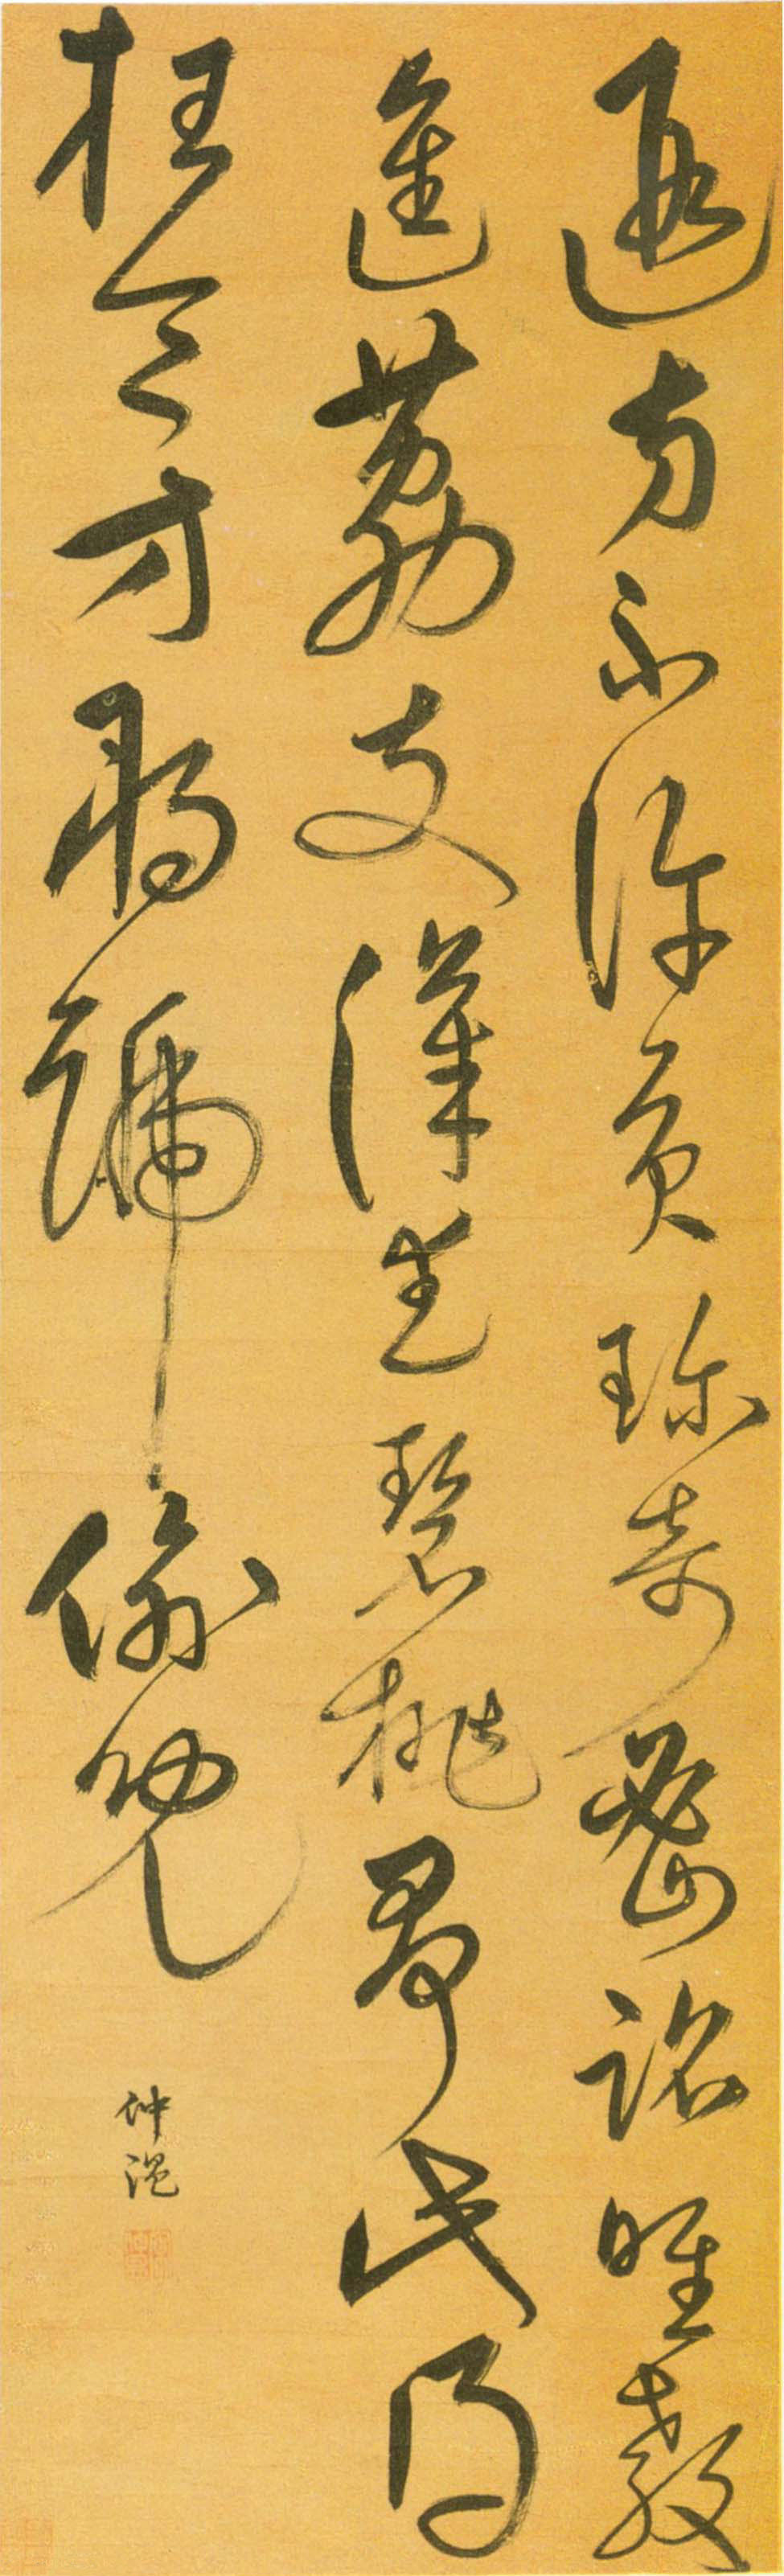 宋克草书《韩偓荔枝七绝条幅》-山西省博物馆藏(图1)